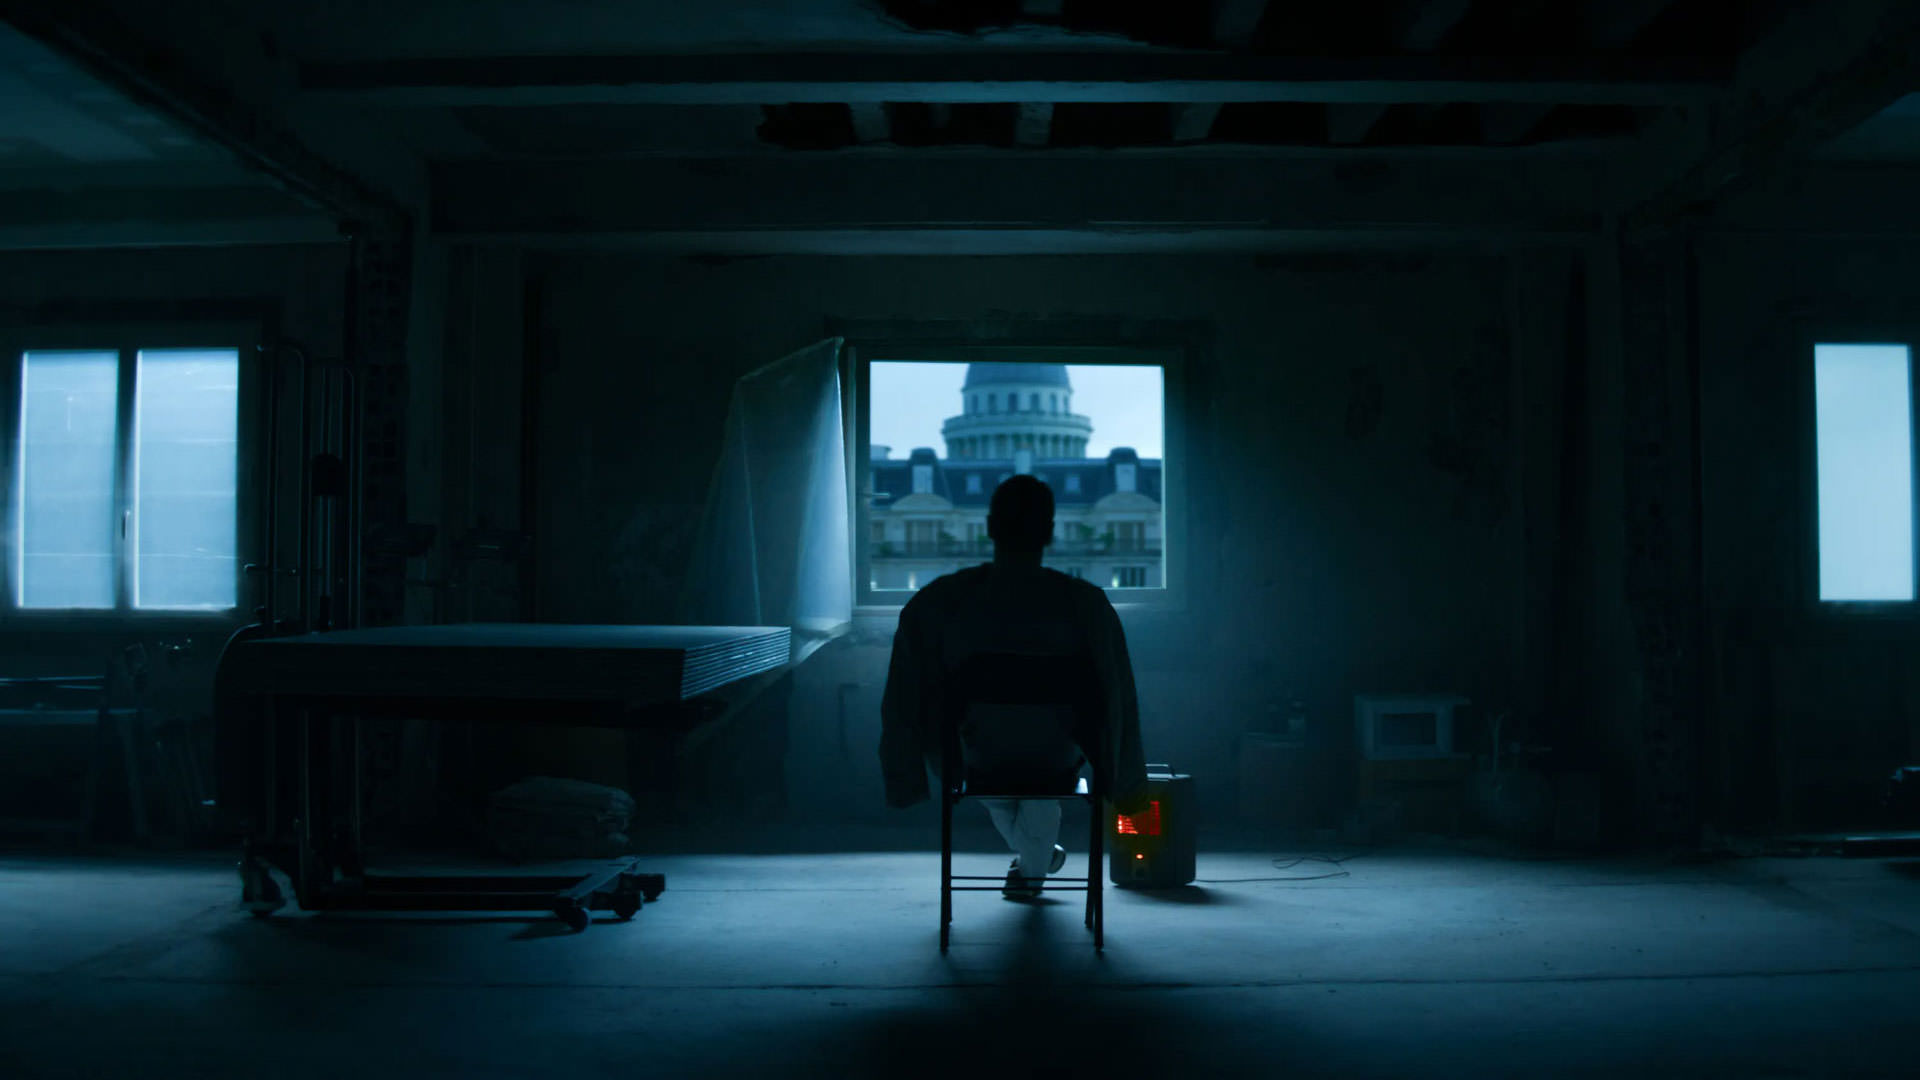 مایکل فاسبندر نشسته روی یک صندلی وسط یک اتاق خالی و تاریک روبه‌روی یک پنجره‌ی کوچک در نمایی از فیلم قاتل به کارگردانی دیوید فینچر